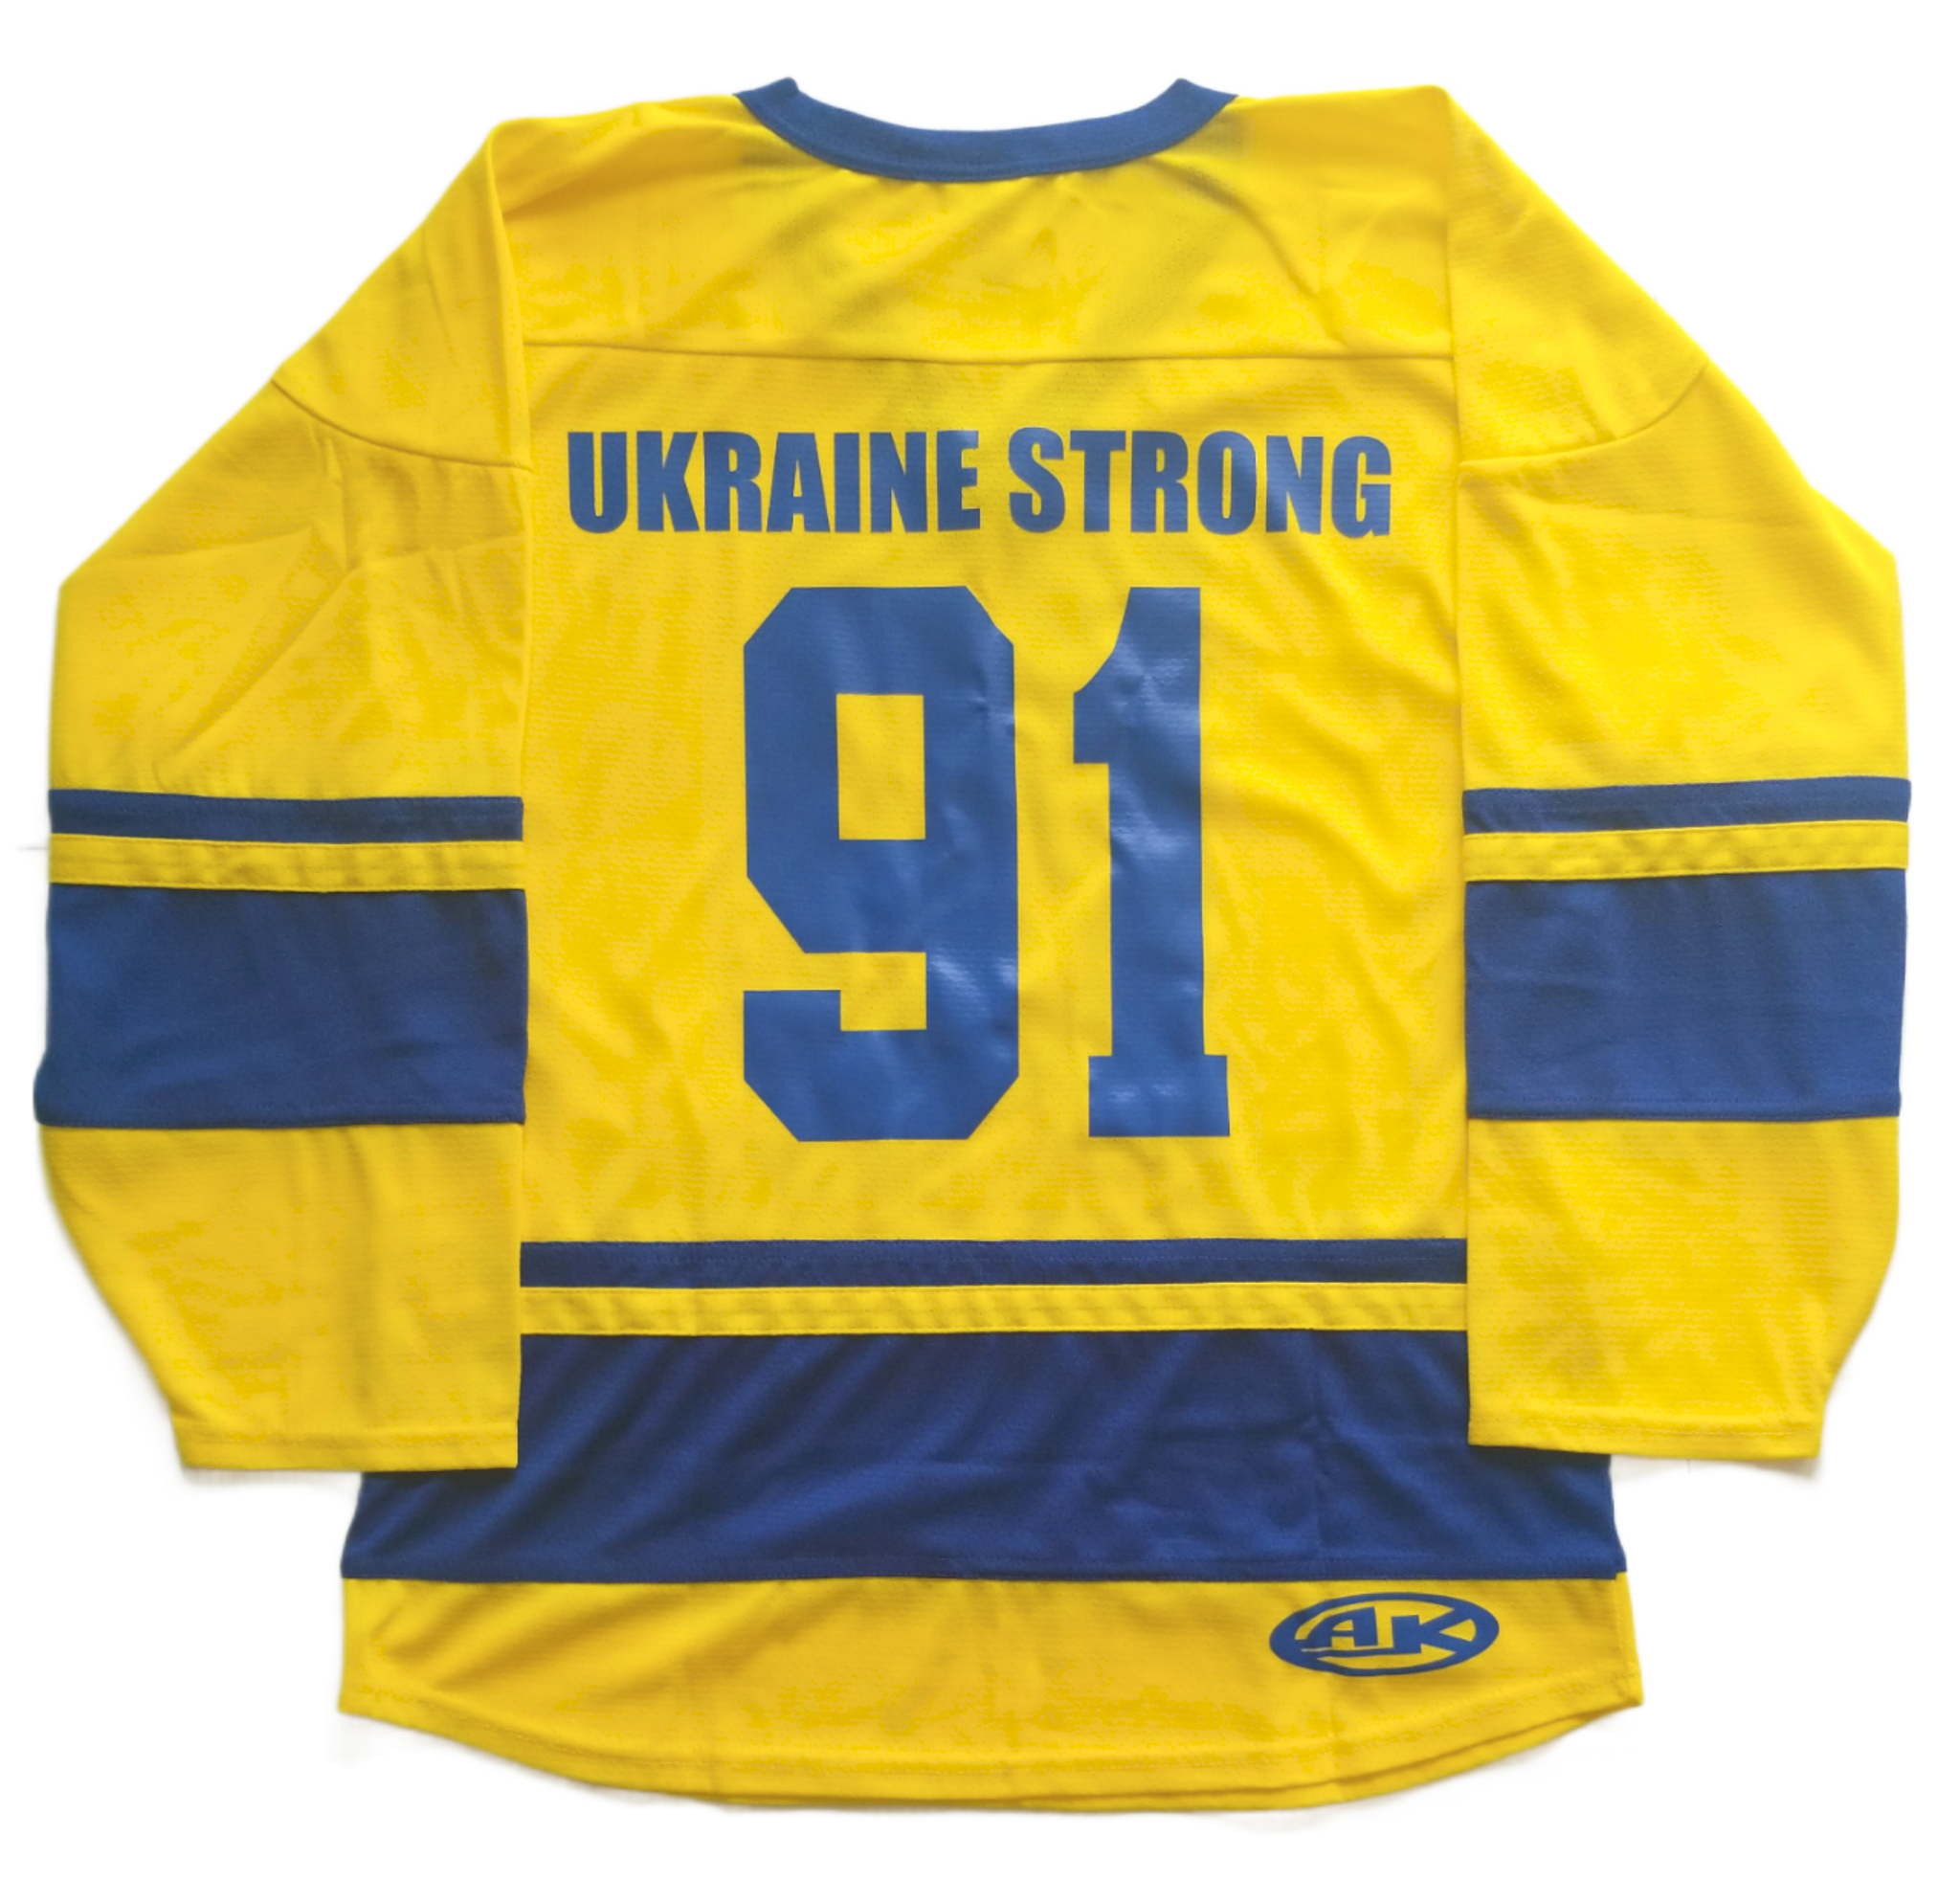 Authentic Russian Hockey Jersey Sokol Kiev Ukraine Size 54 New